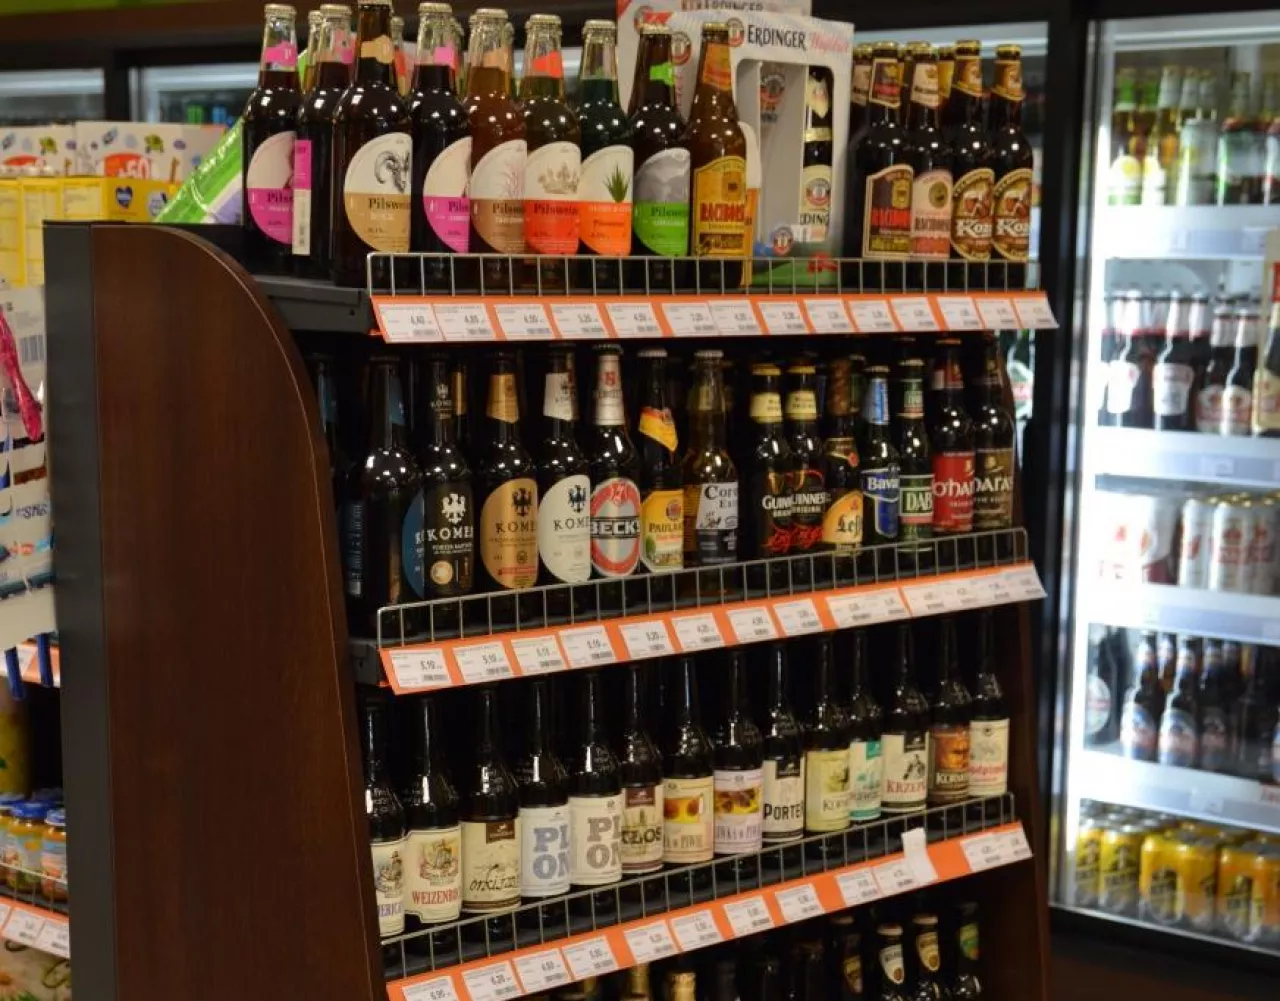 Piwnych stylów jest tyle, że konsument się gubi. Z pomocą może przyjść dobrze przeszkolony sprzedawca (fot. SSZ)